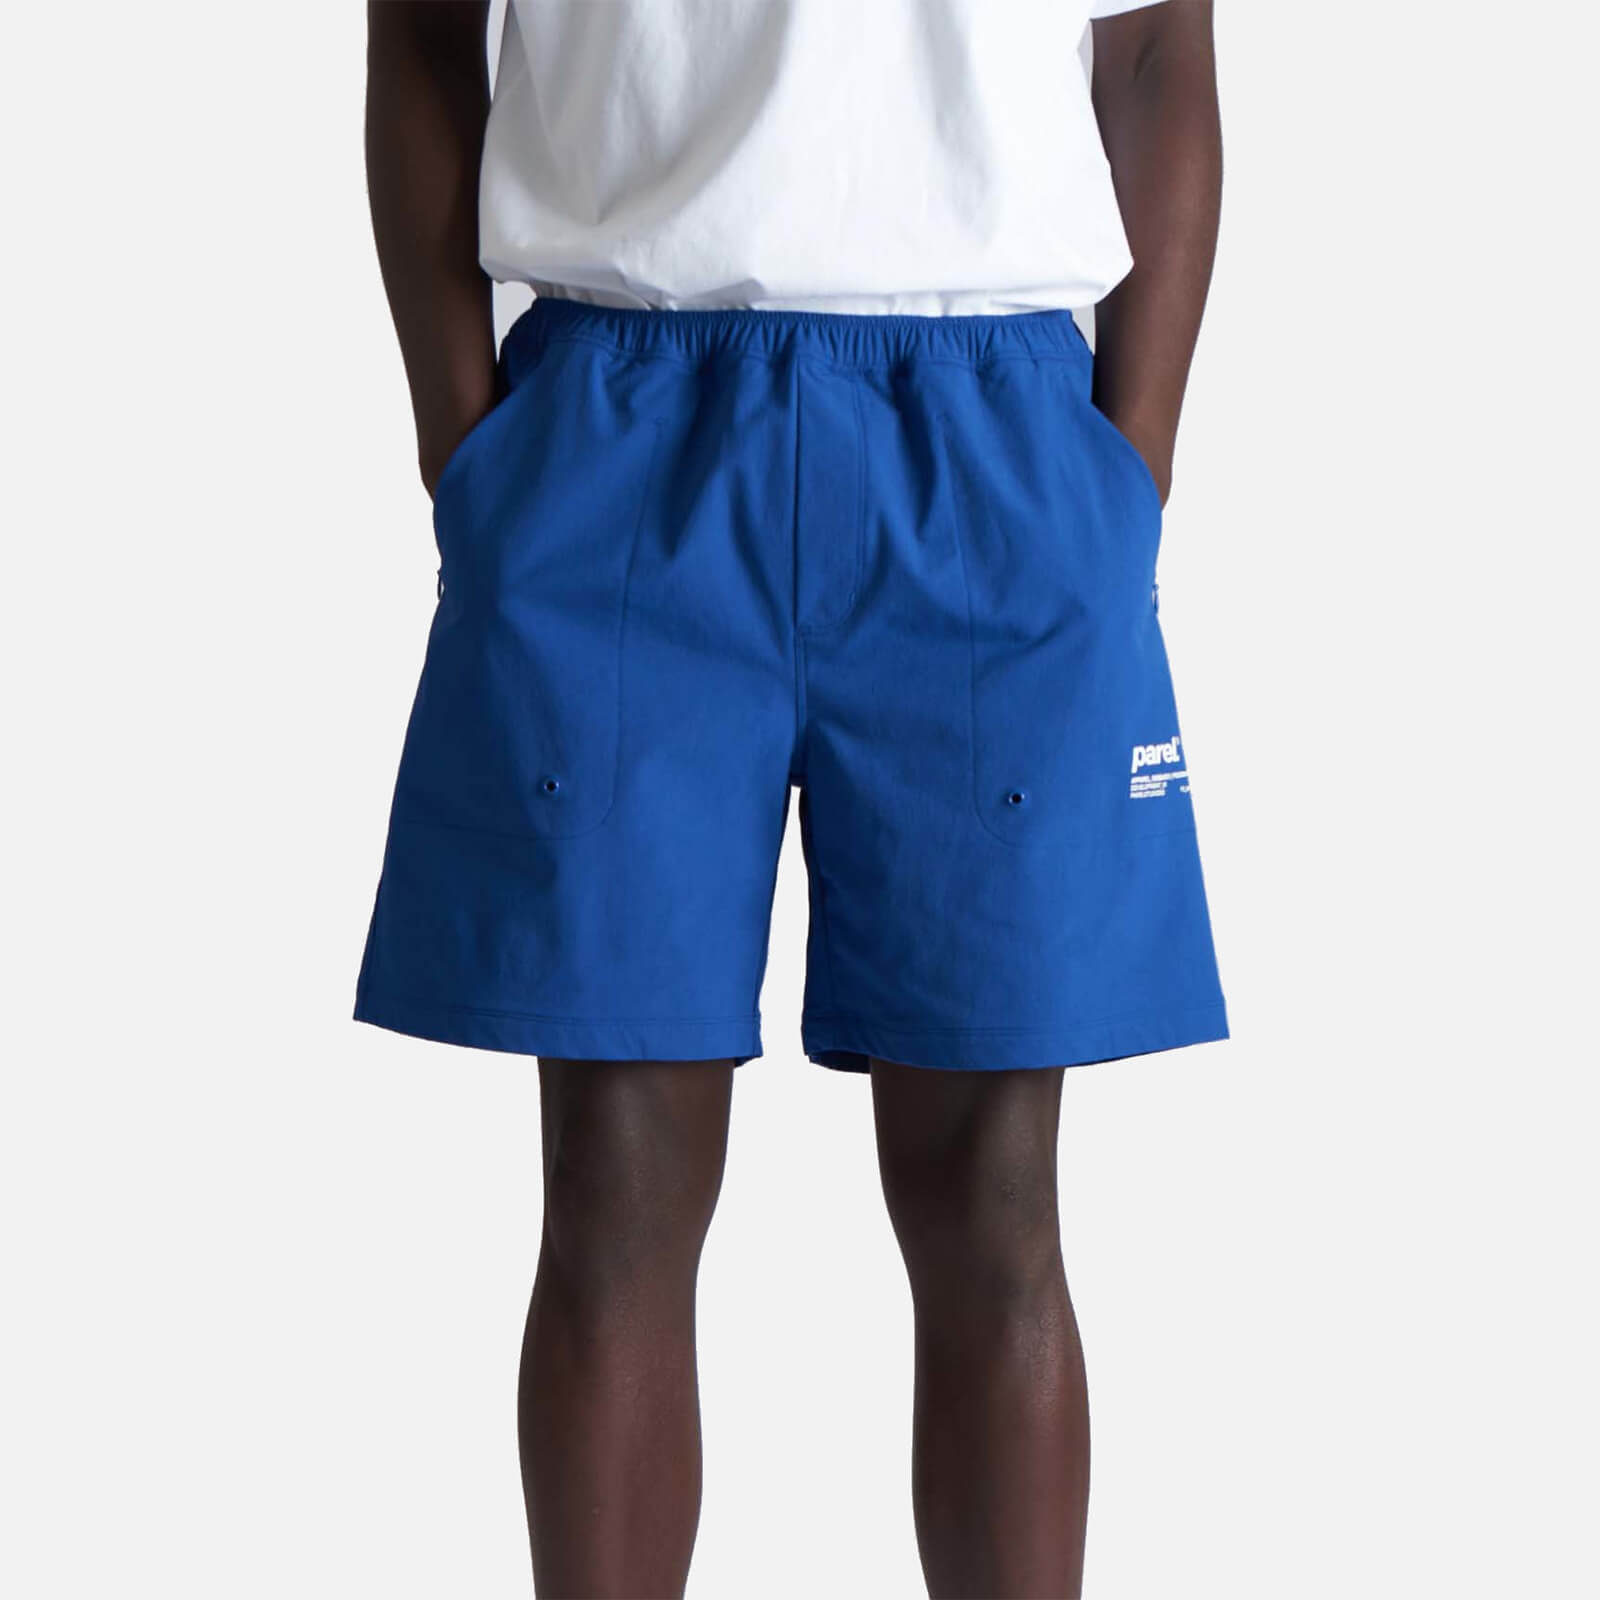 Parel Studios Men's Saana Shorts - Cobalt Blue - S